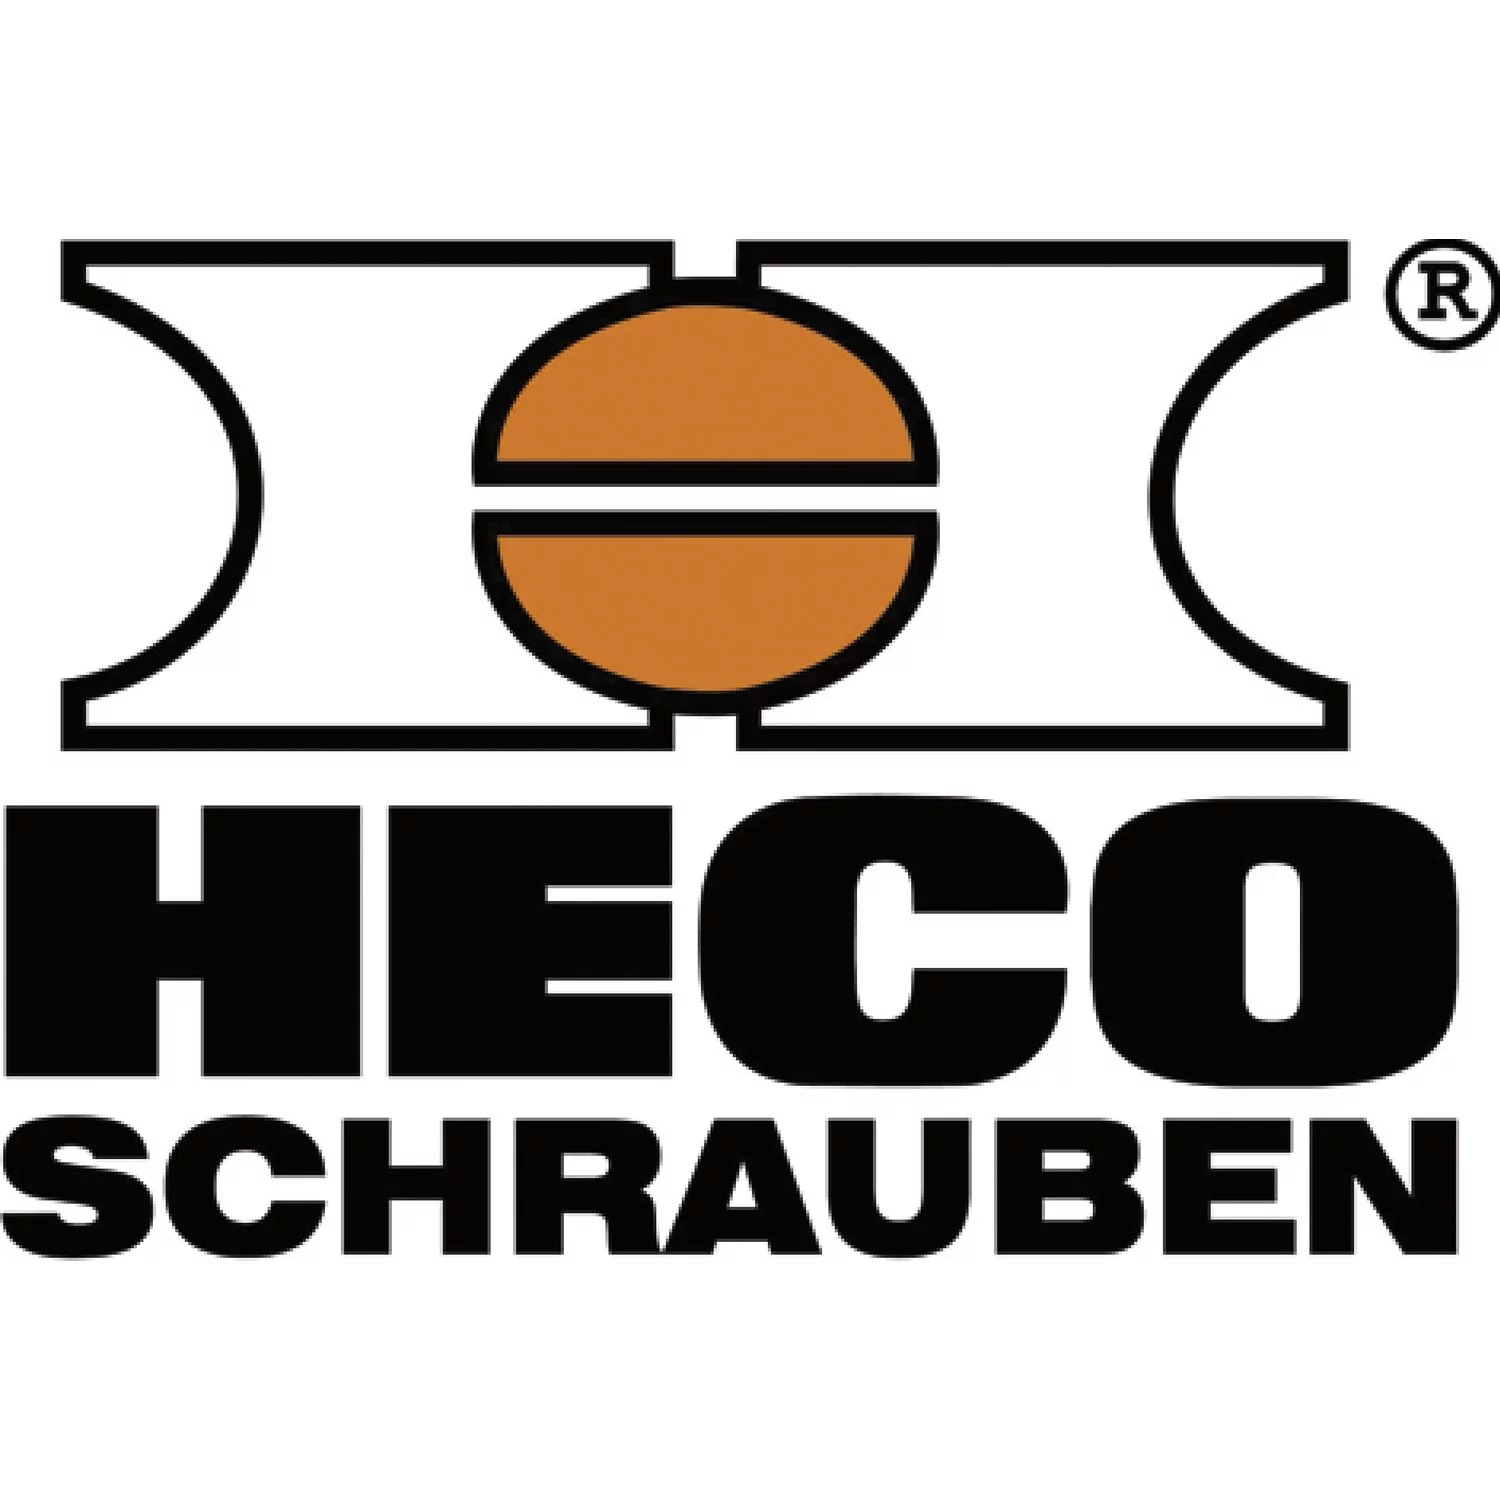 Heco Schrauben